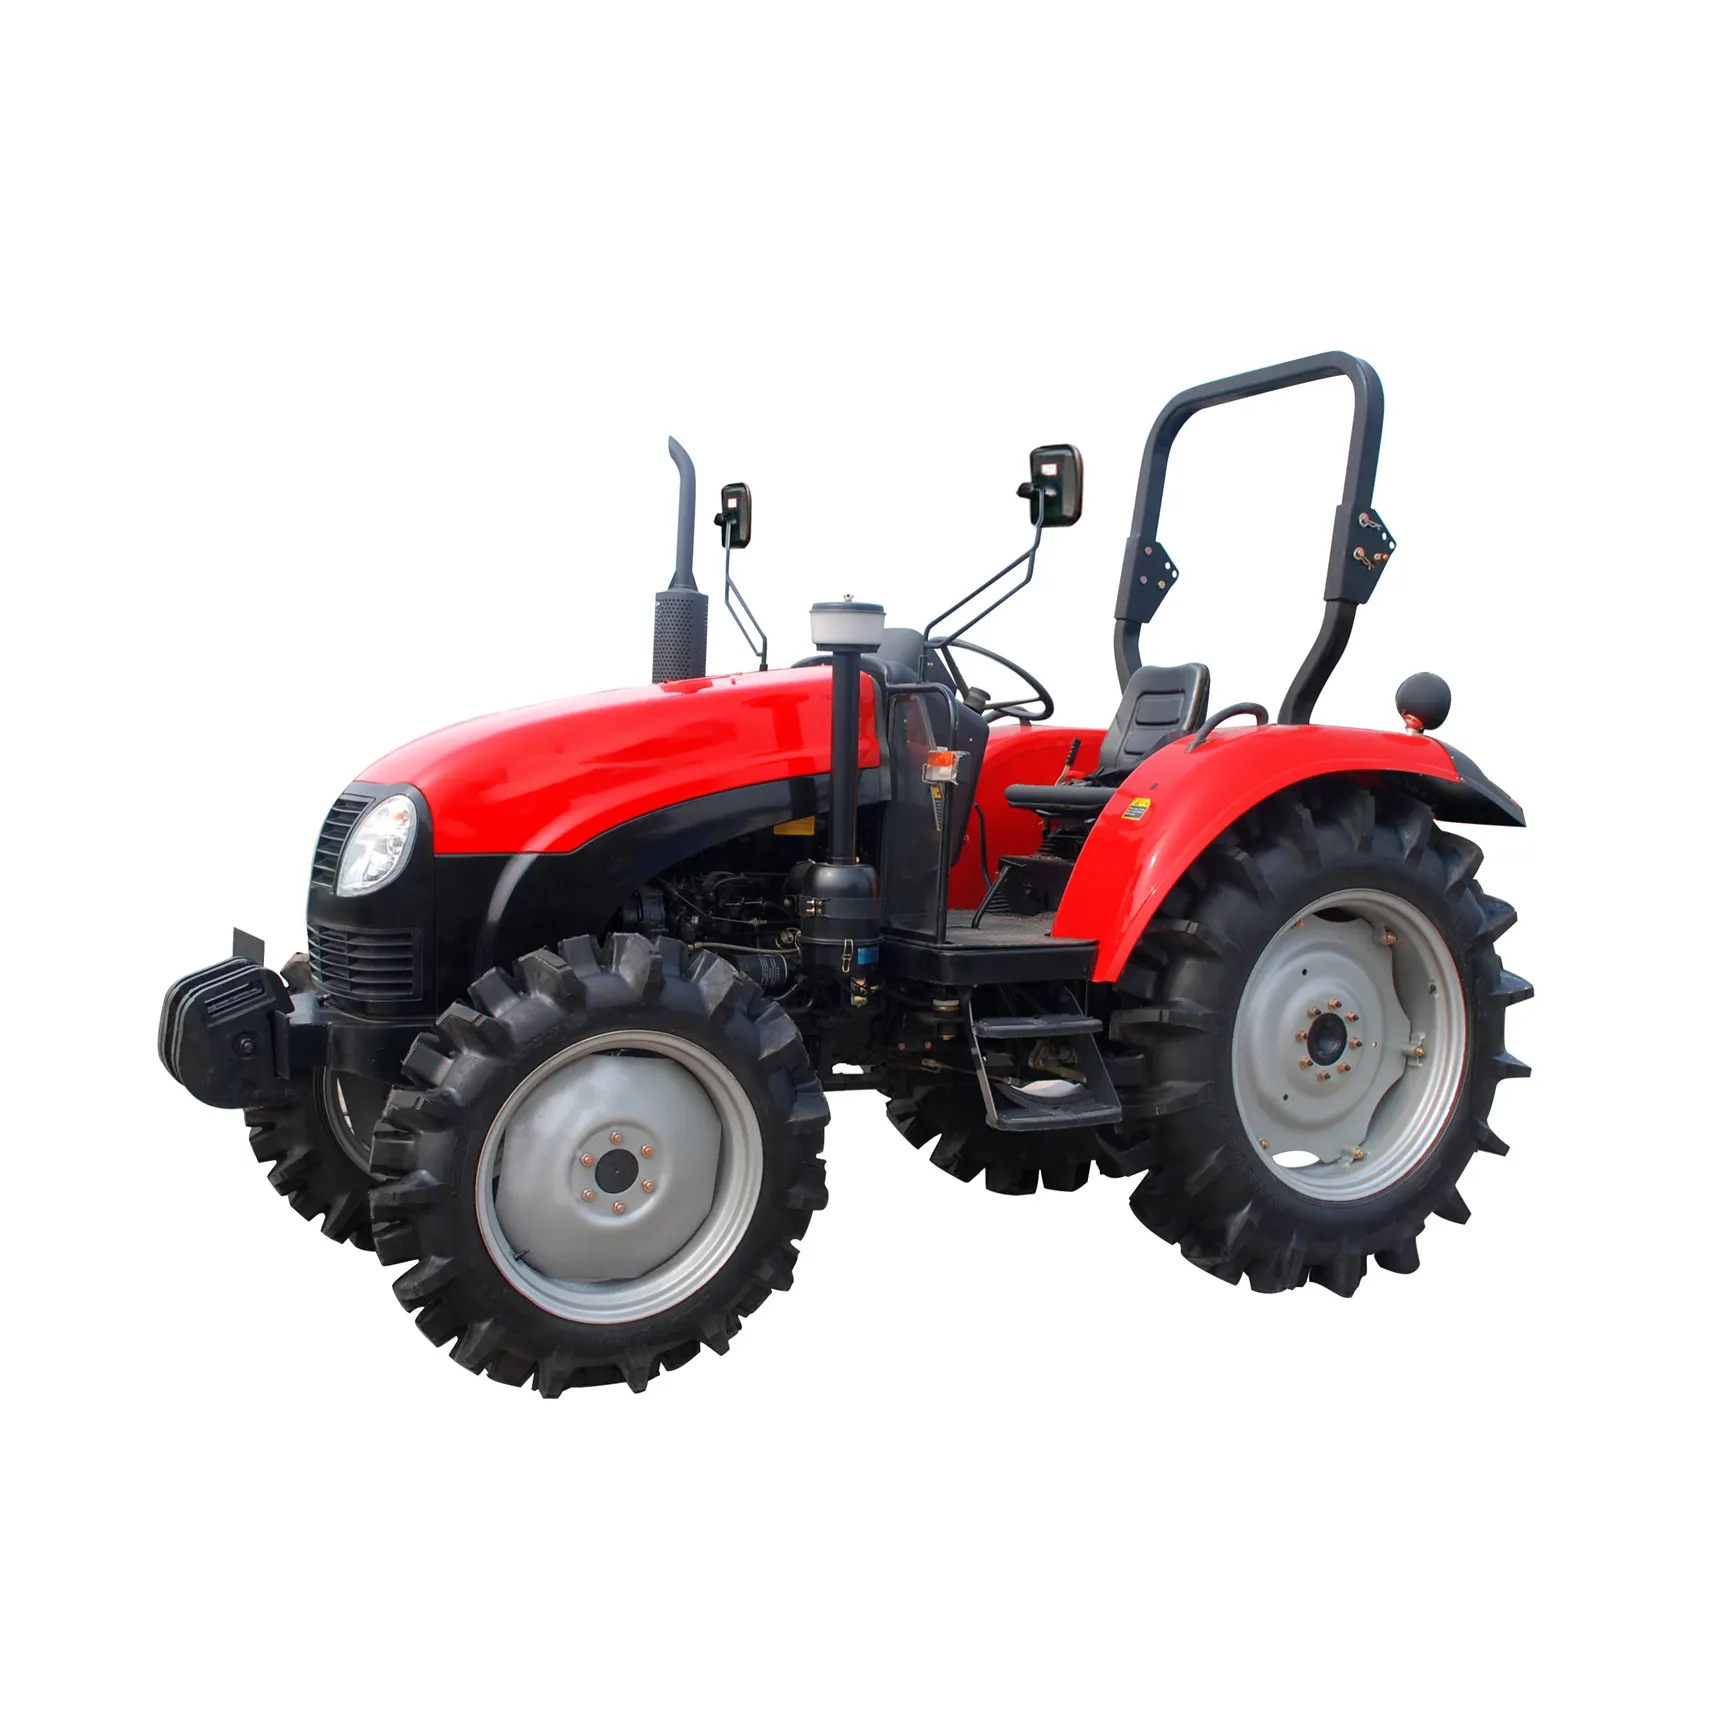 Macchine agricole 504 trattore agricolo in stock in vendita